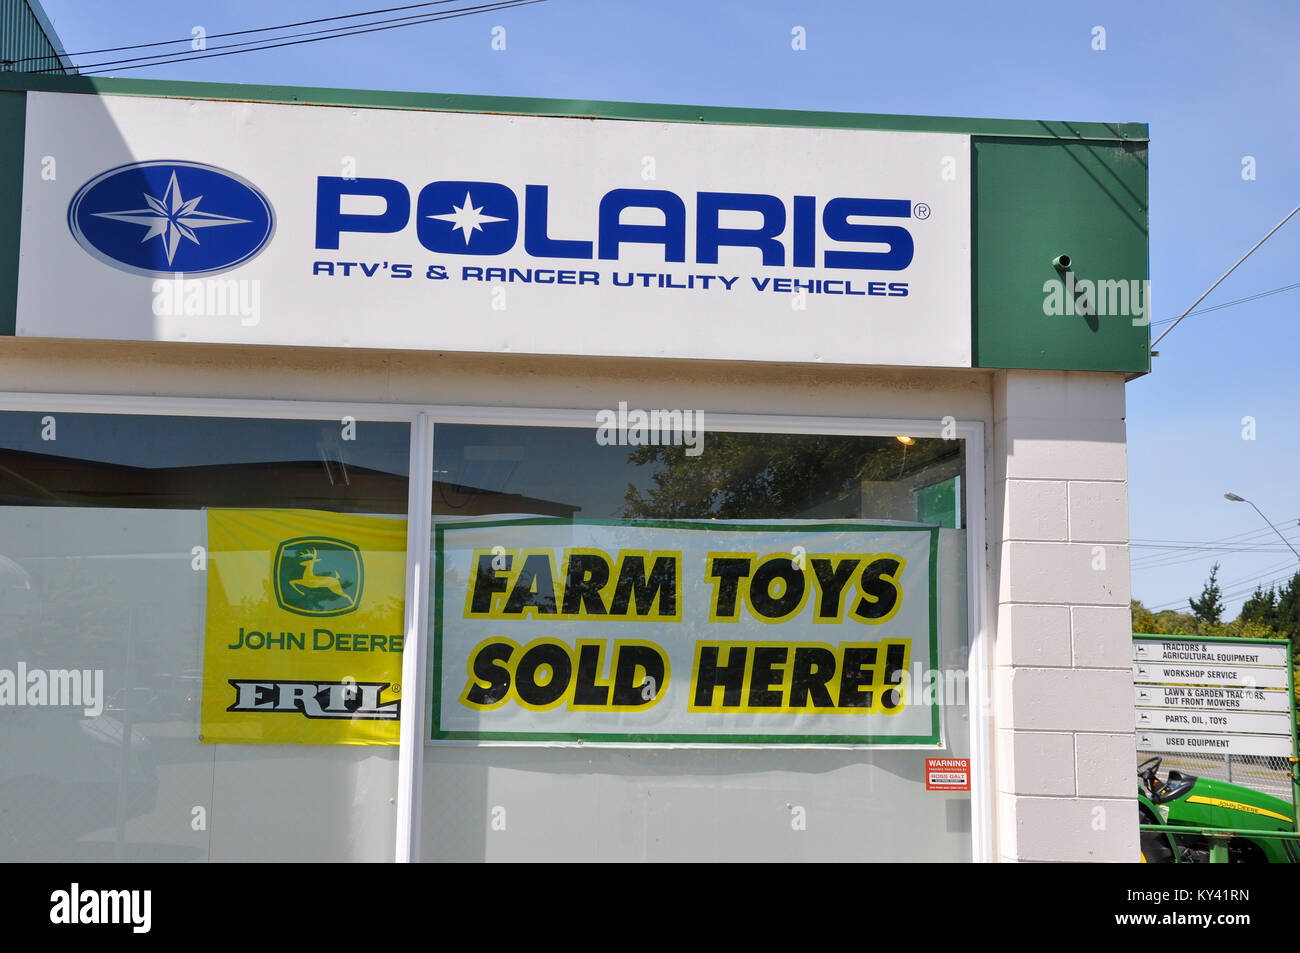 Magasin d'équipement de ferme en Nouvelle-Zélande avec slogan comédie Farm jouets vendus ici. Vtt Polaris Ranger & véhicules utilitaires - abusé apostrophe annonce Banque D'Images